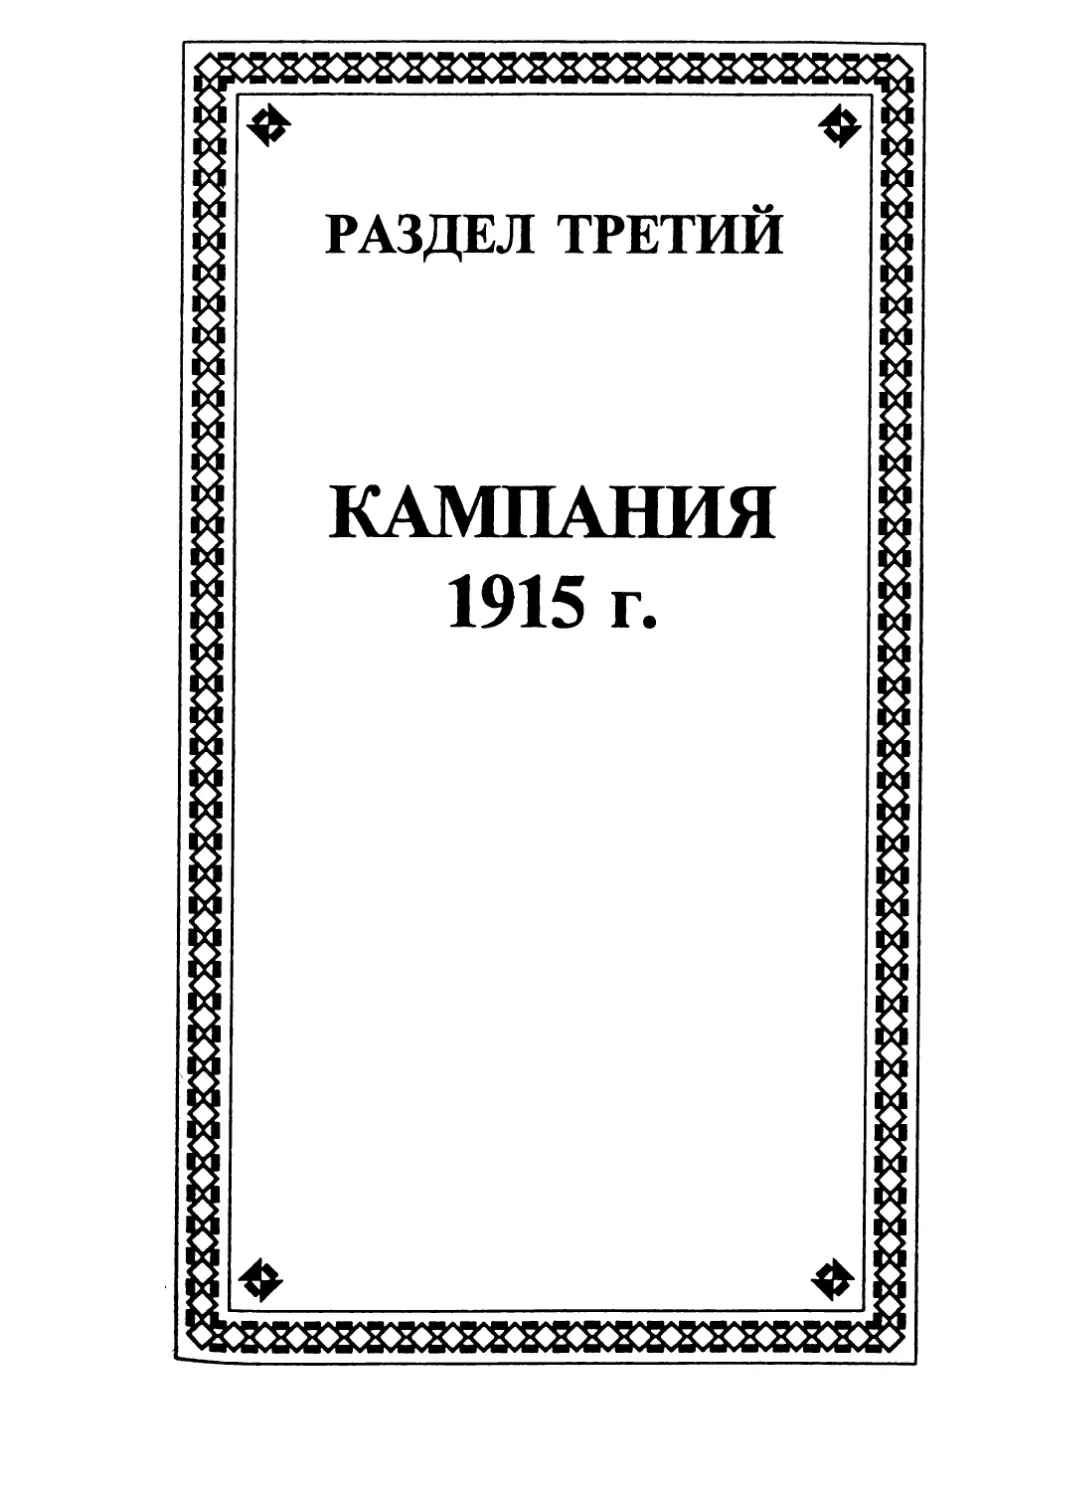 РАЗДЕЛ ТРЕТИЙ. КАМПАНИЯ 1915 г.